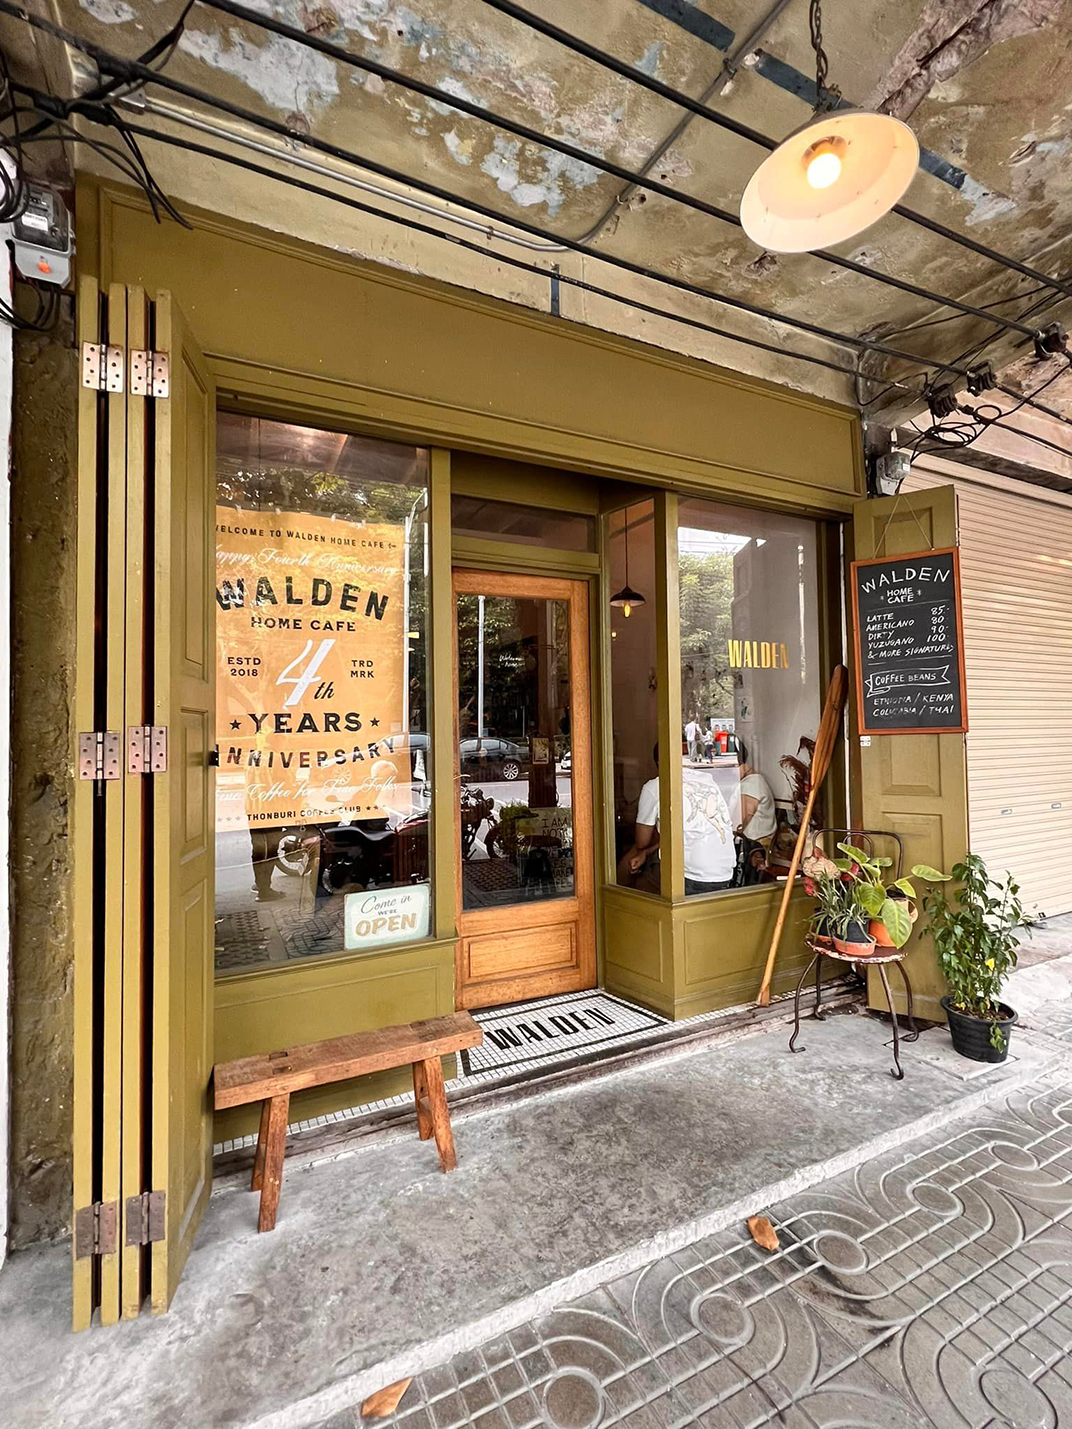 咖啡馆Walden Home Cafe 泰国 咖啡店 复古 马赛克 老社区 logo设计 vi设计 空间设计